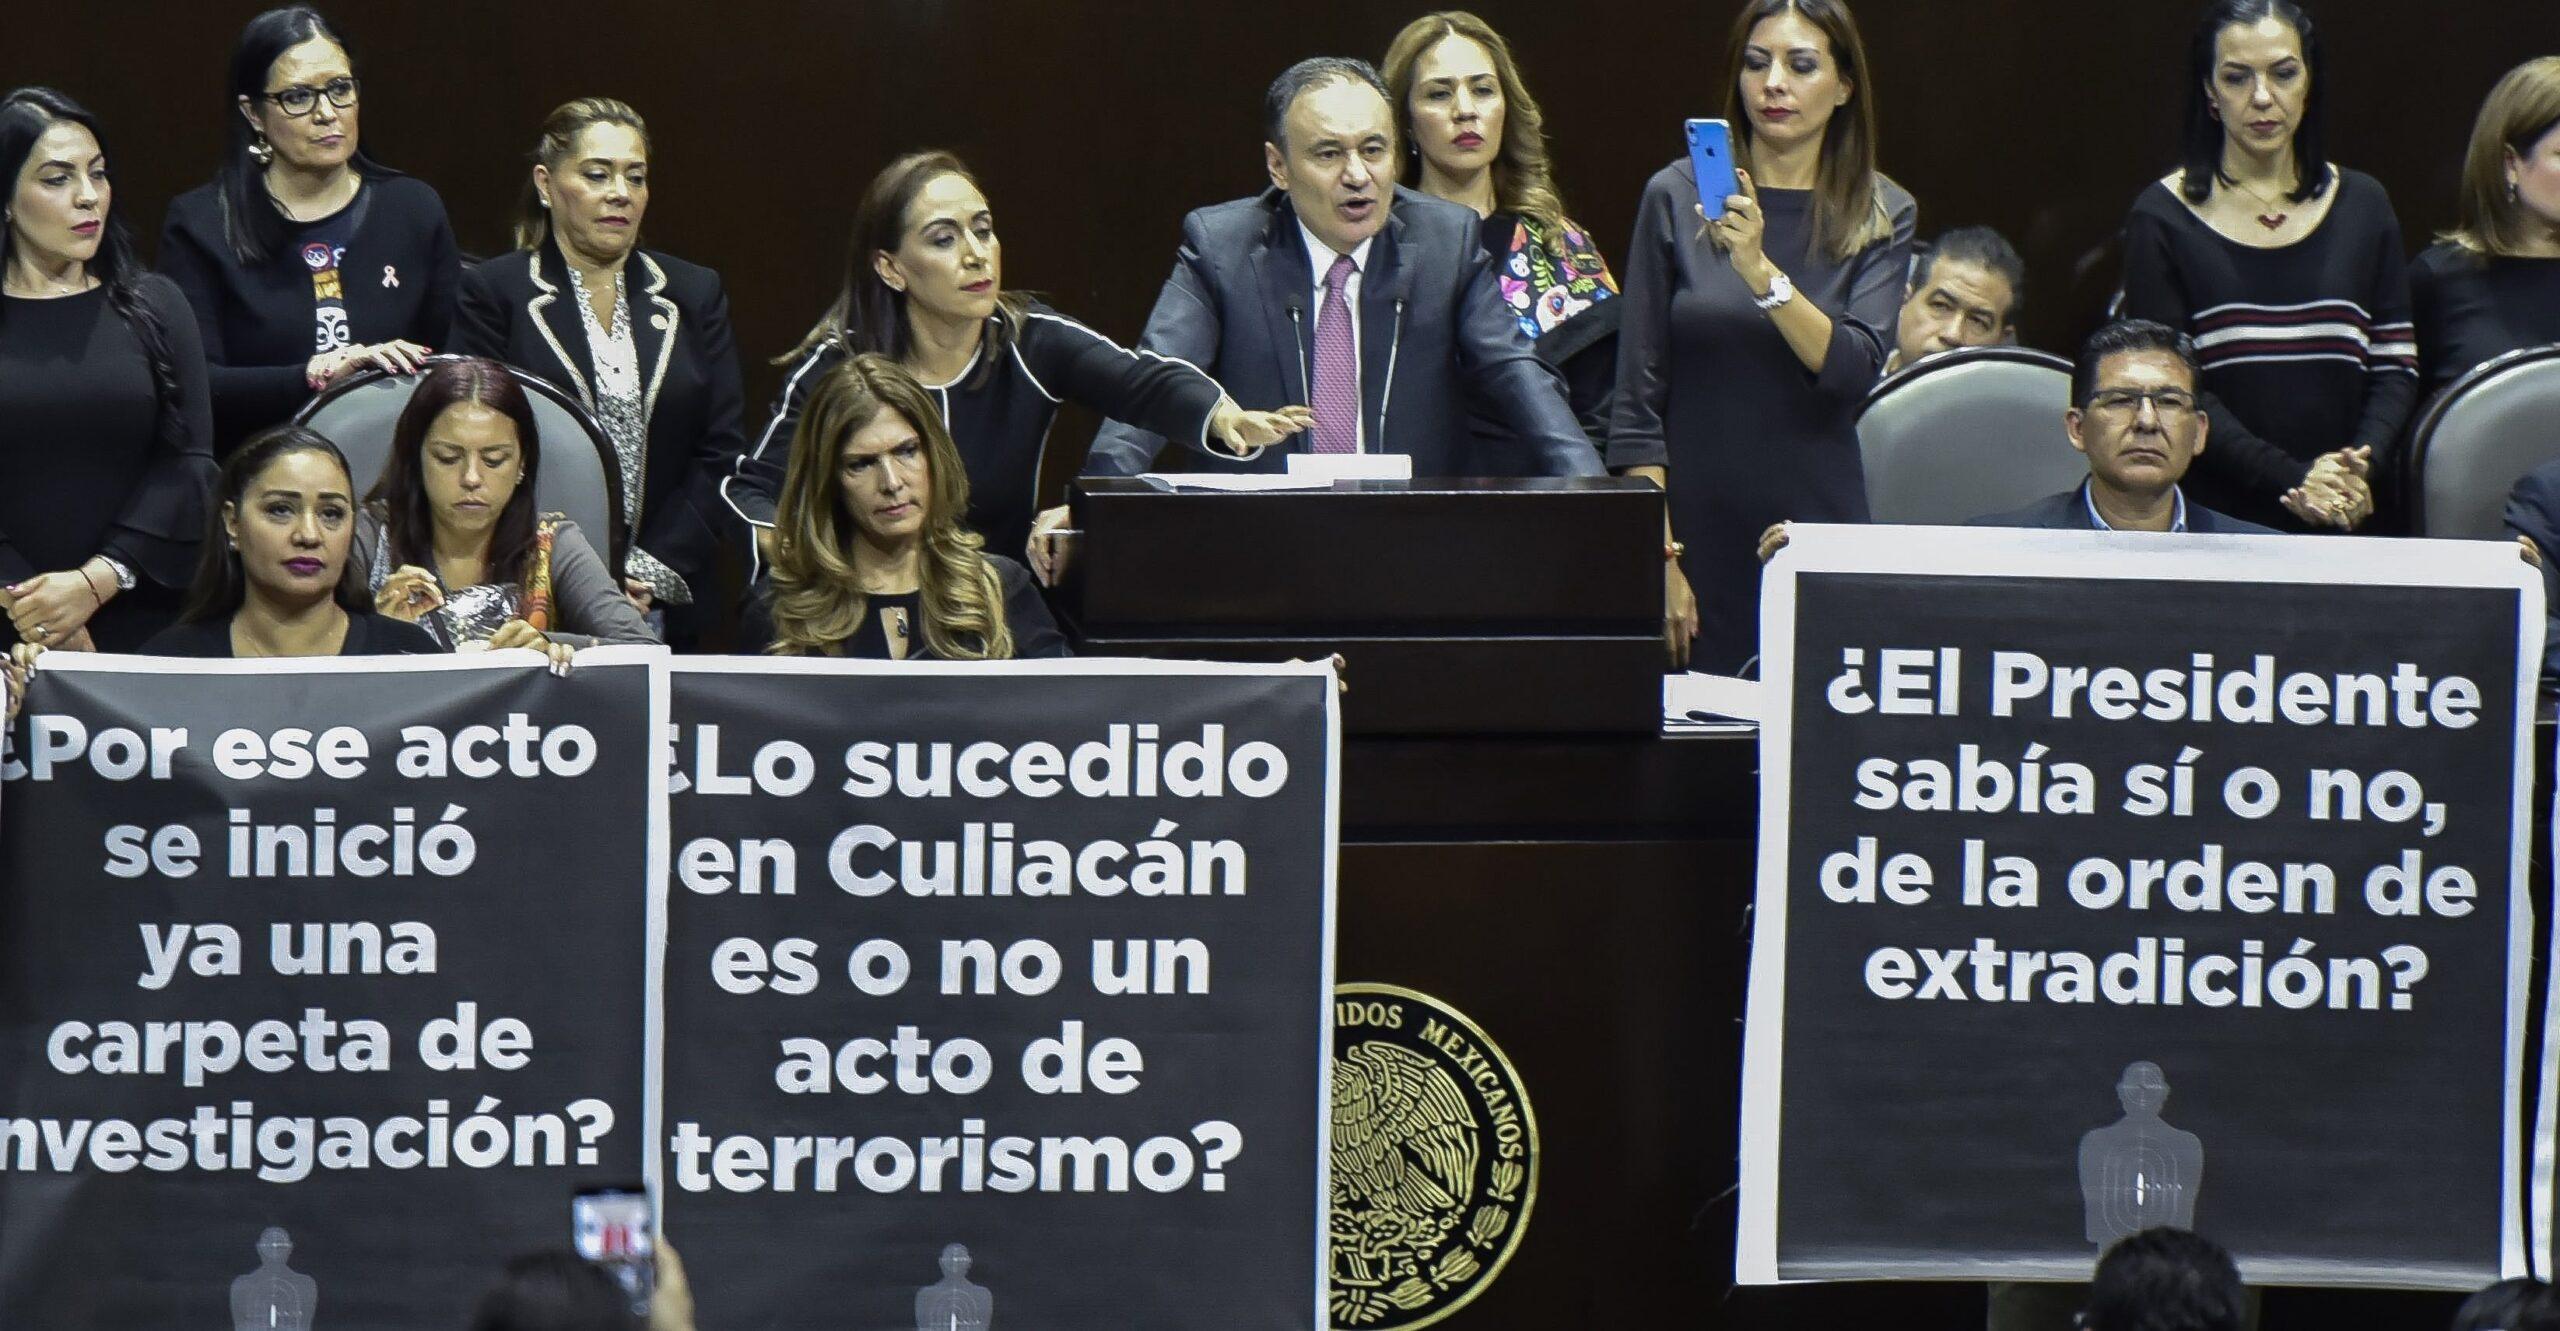 Ovidio Guzmán es buscado en EU, en México no se le acusa de nada, dice Durazo a diputados